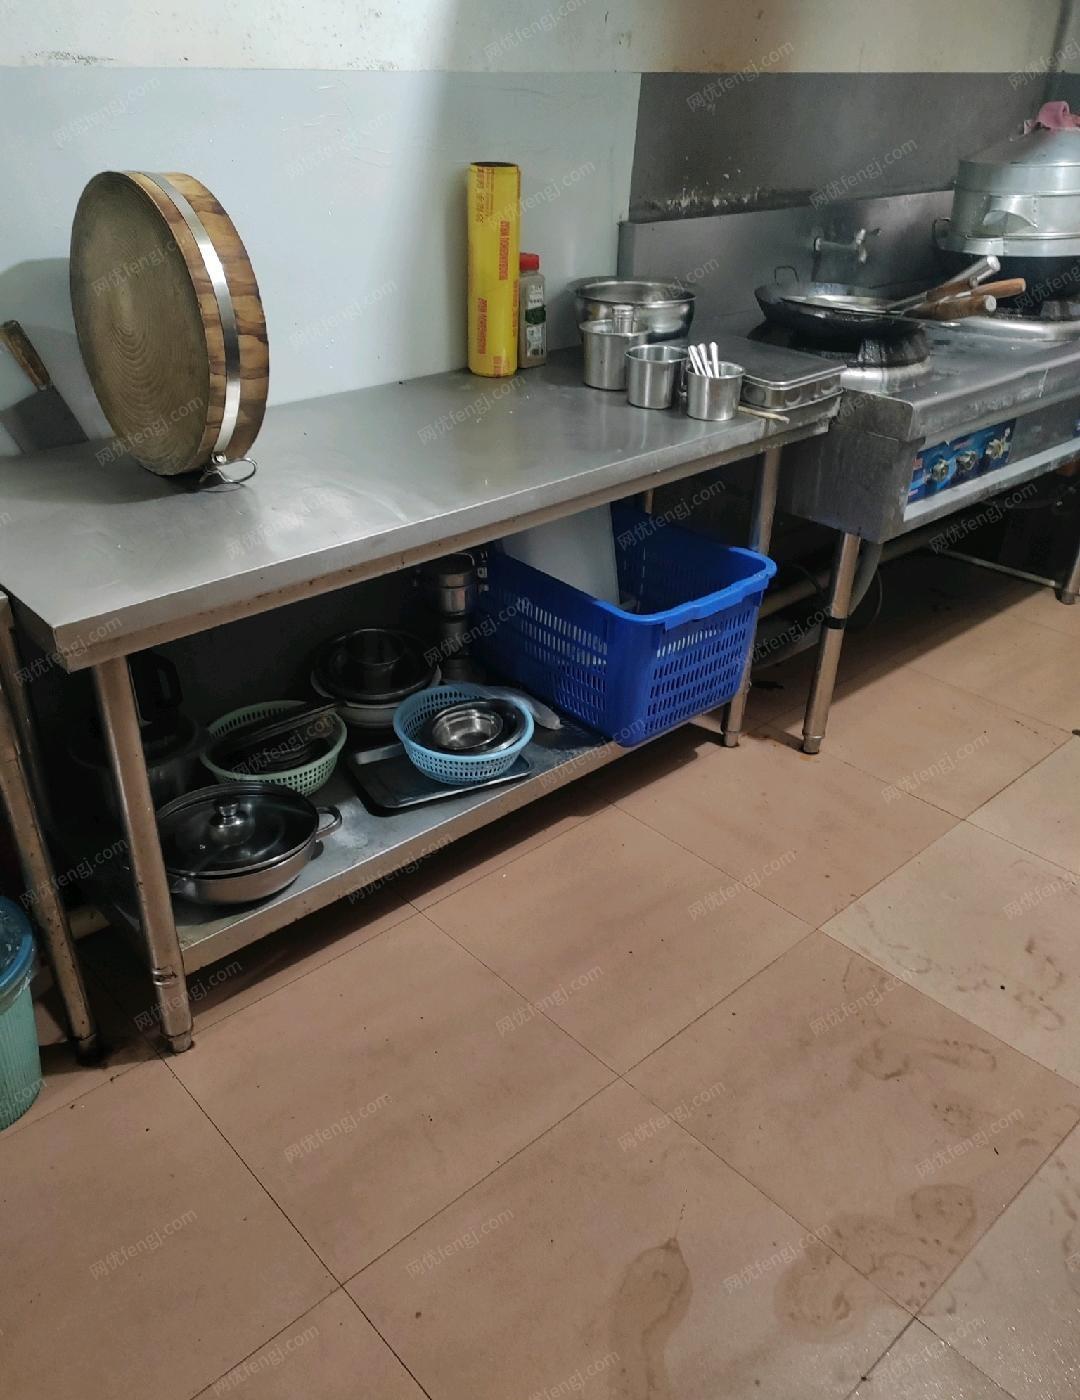 广西柳州9成新厨房设备出售